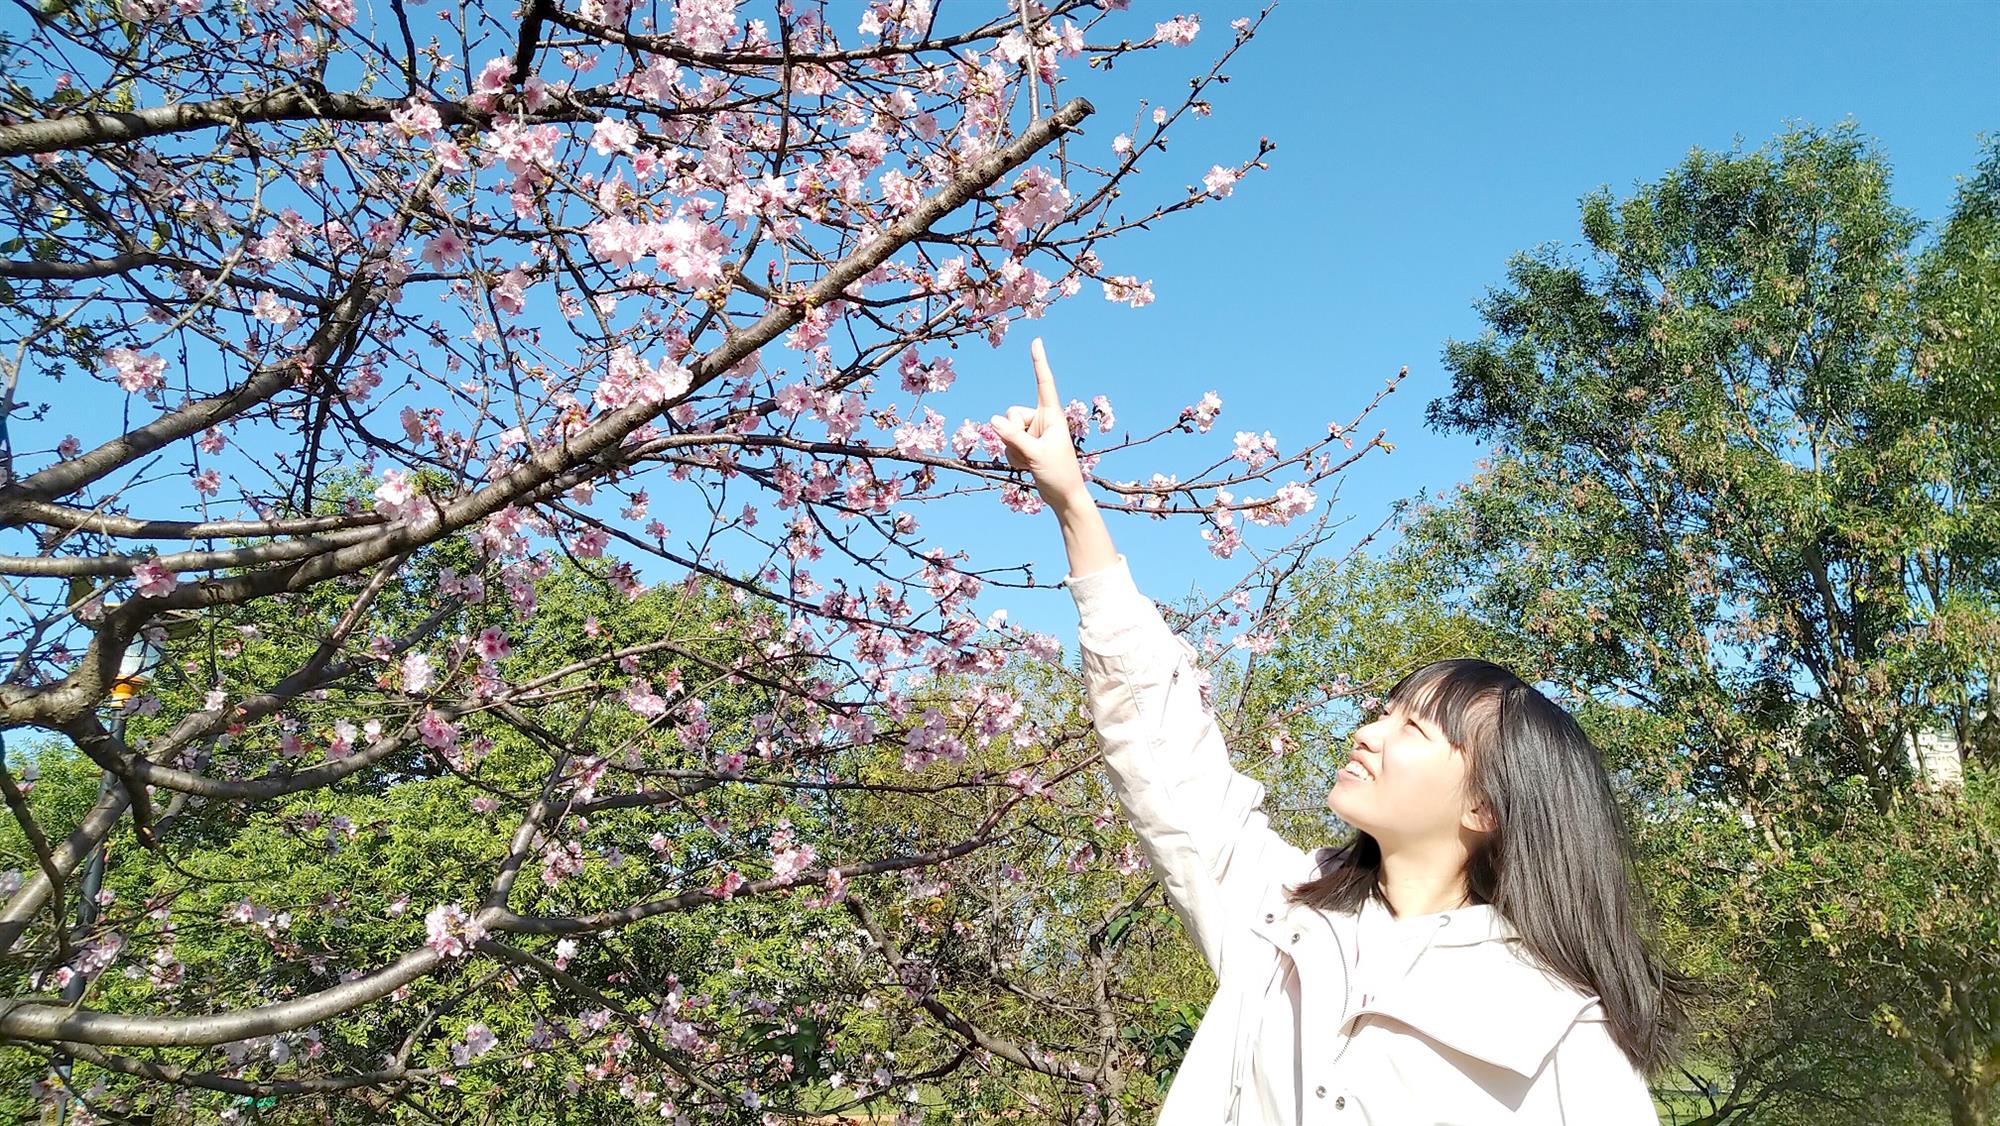 駐足在櫻花樹下抬頭欣賞著美麗的花朵